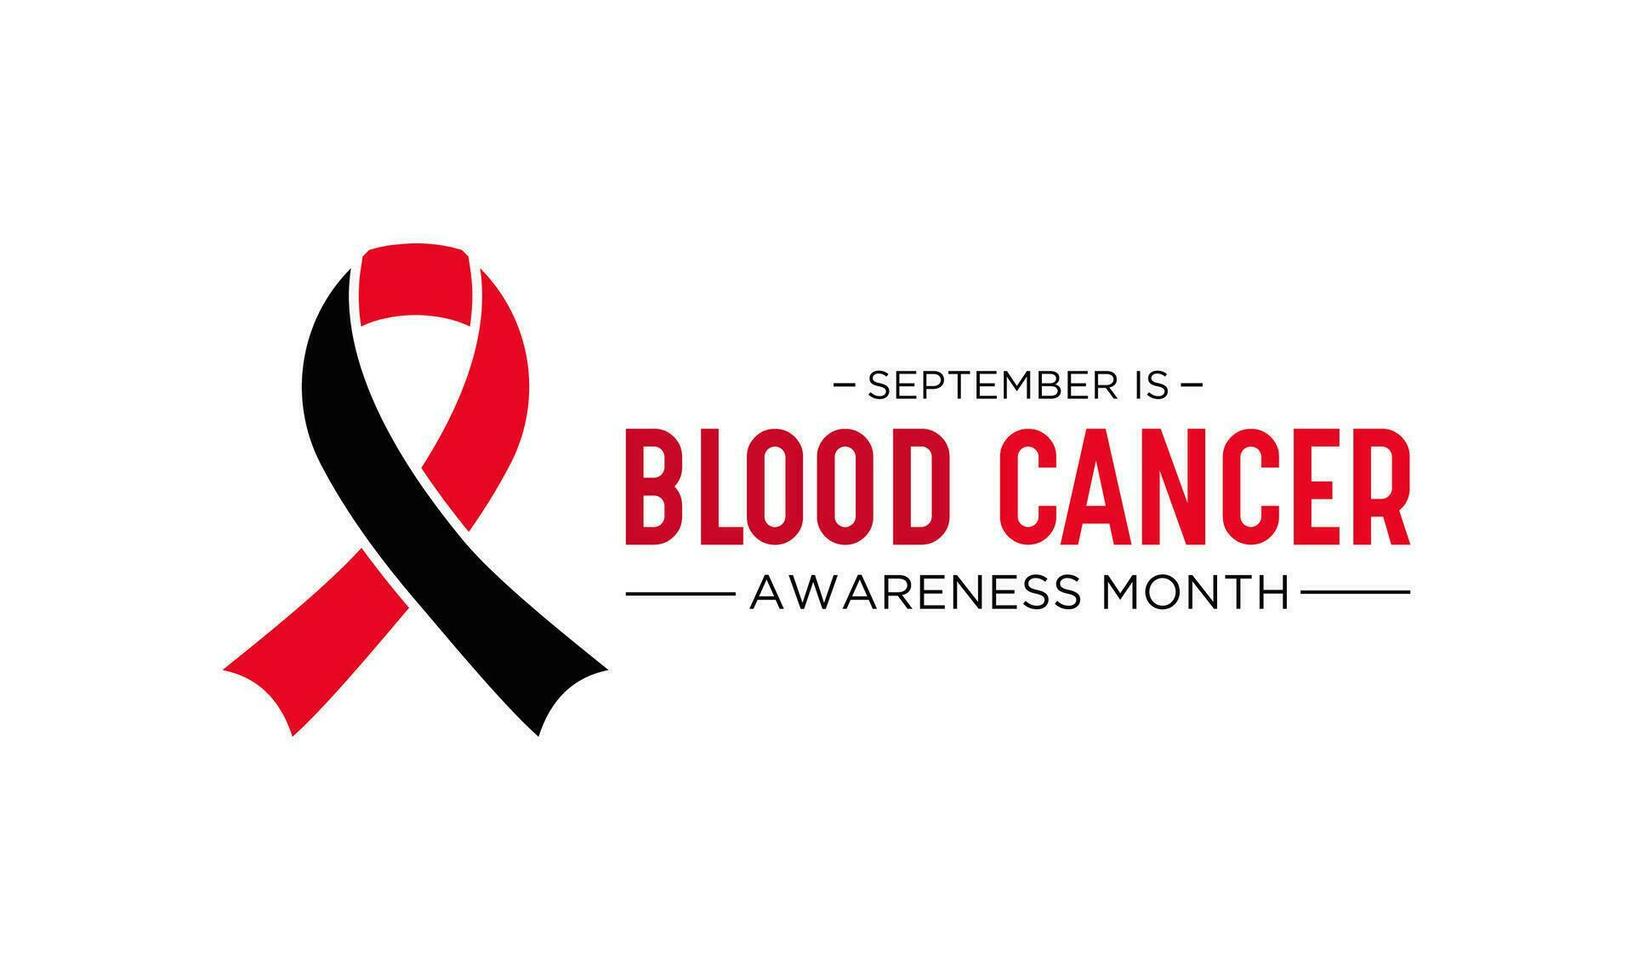 sangue Câncer consciência mês é observado cada ano dentro setembro. setembro é sangue Câncer consciência mês. vetor modelo para bandeira, cumprimento cartão, poster com fundo. vetor ilustração.